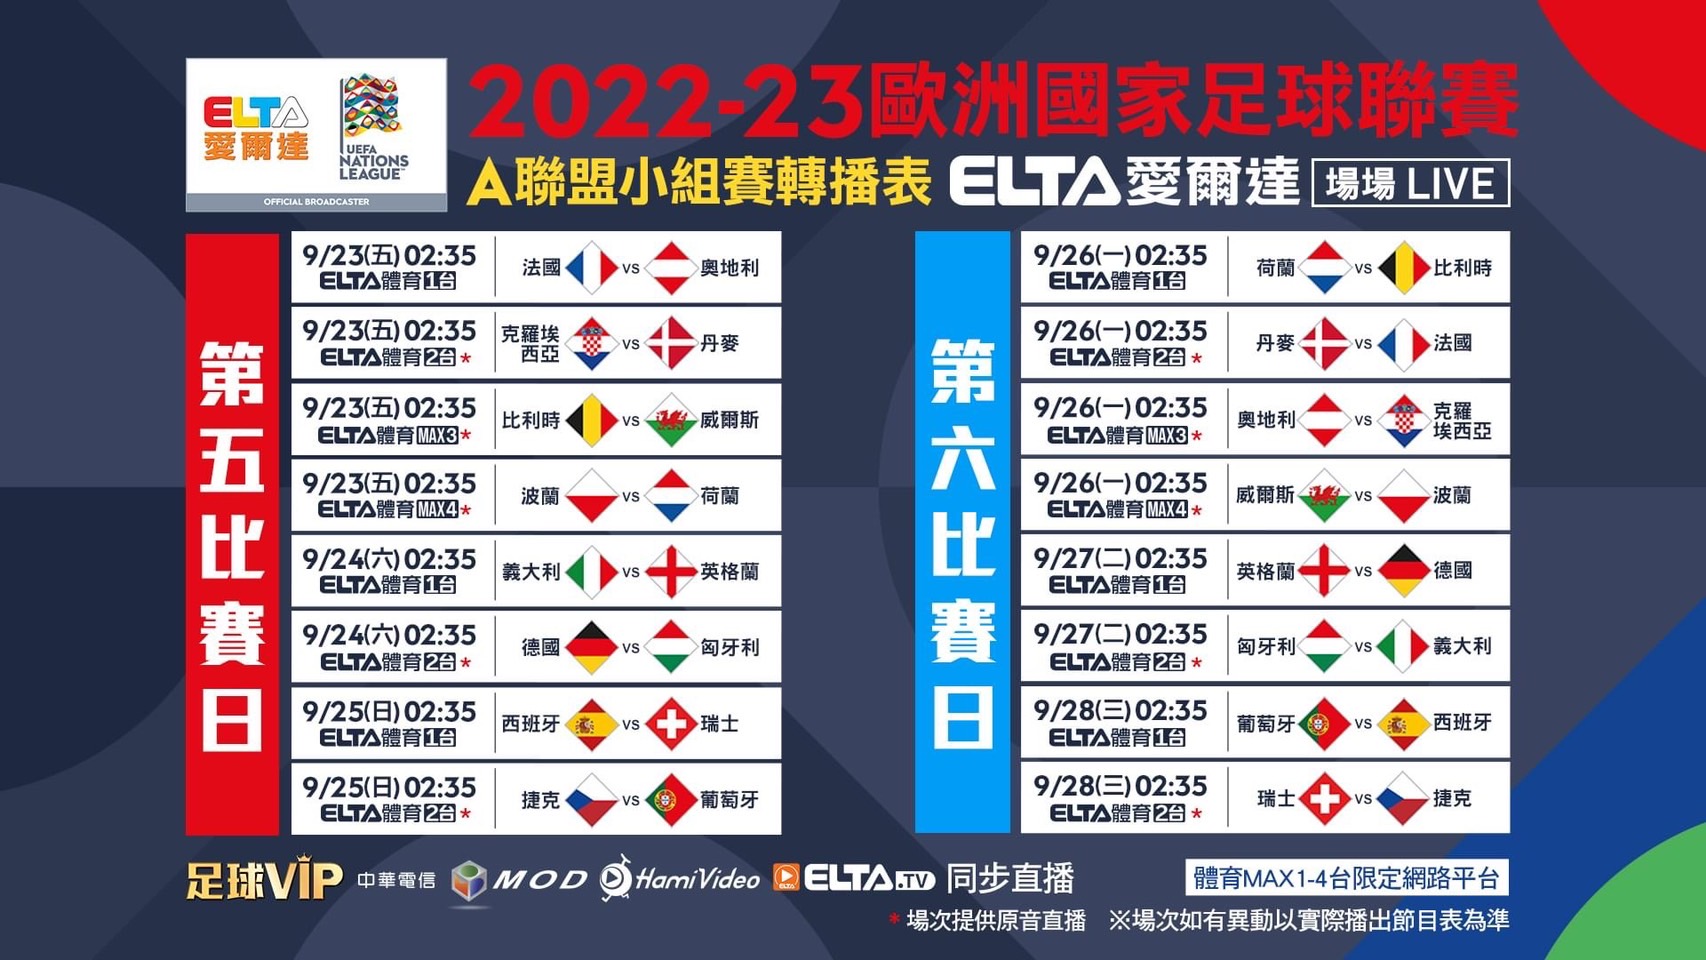 2022 23歐洲國家足球聯賽 MOD愛爾達轉播時刻表。官方提供